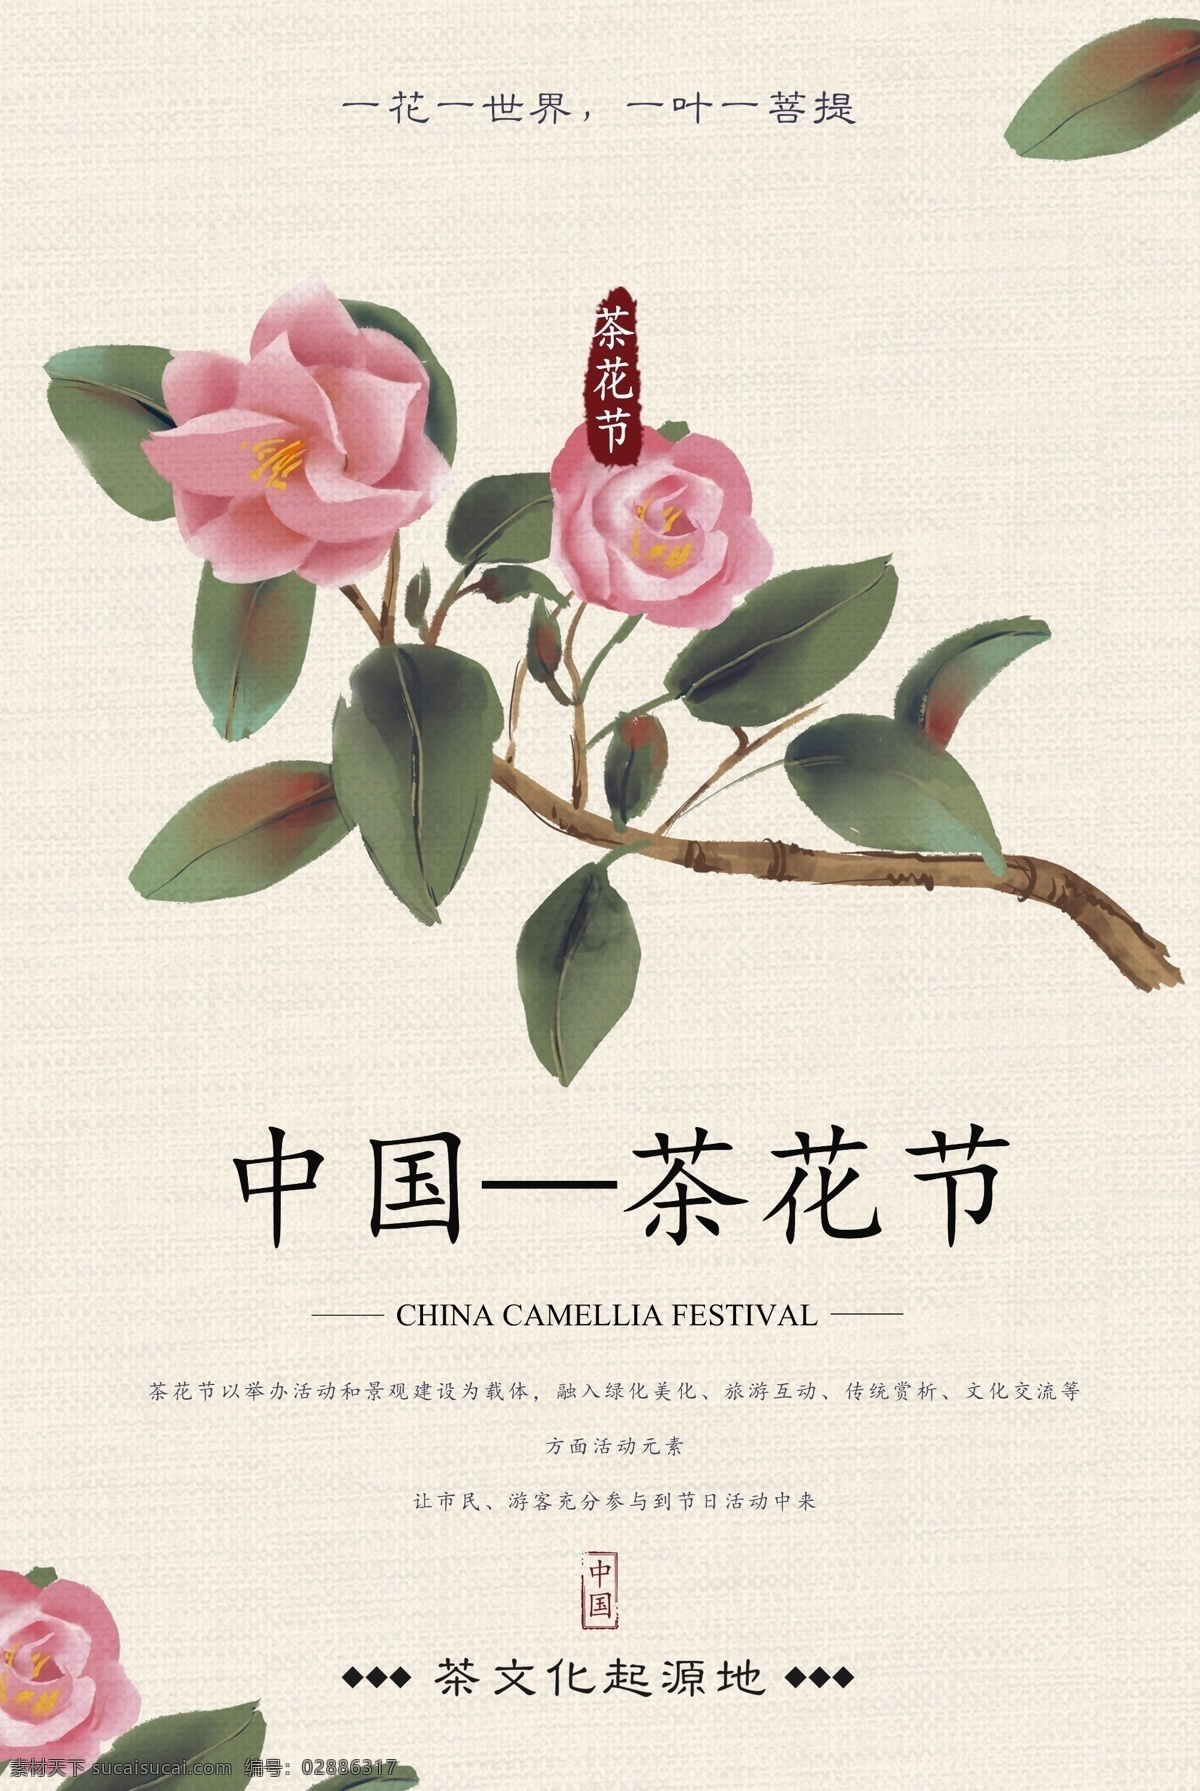 茶花 节 节日 宣传 活动 海报 素材图片 茶花节 传统节日